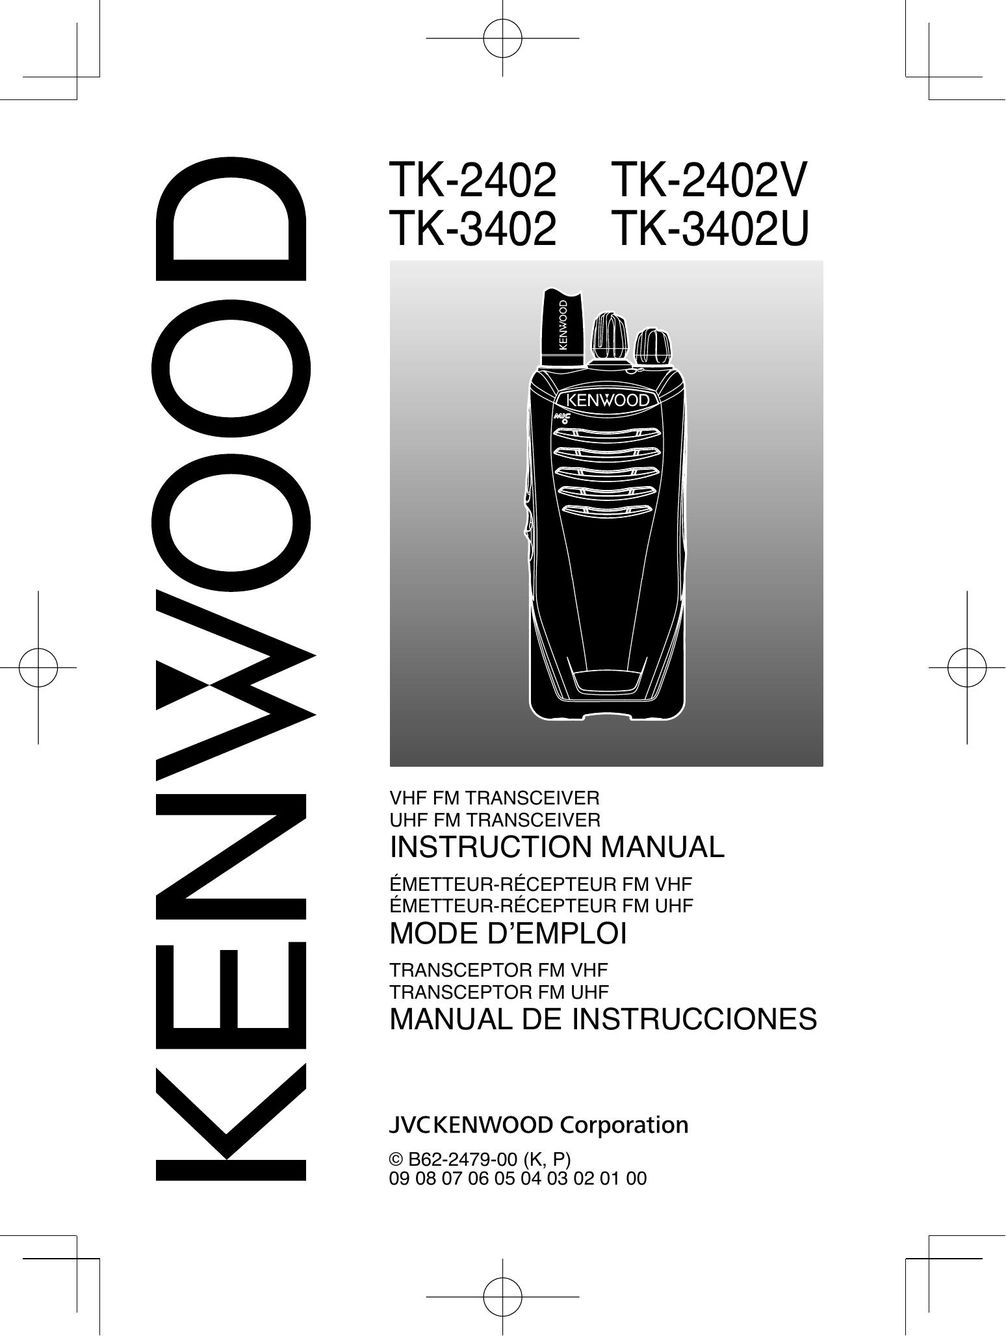 Kenwood TK-3402 Satellite Radio User Manual